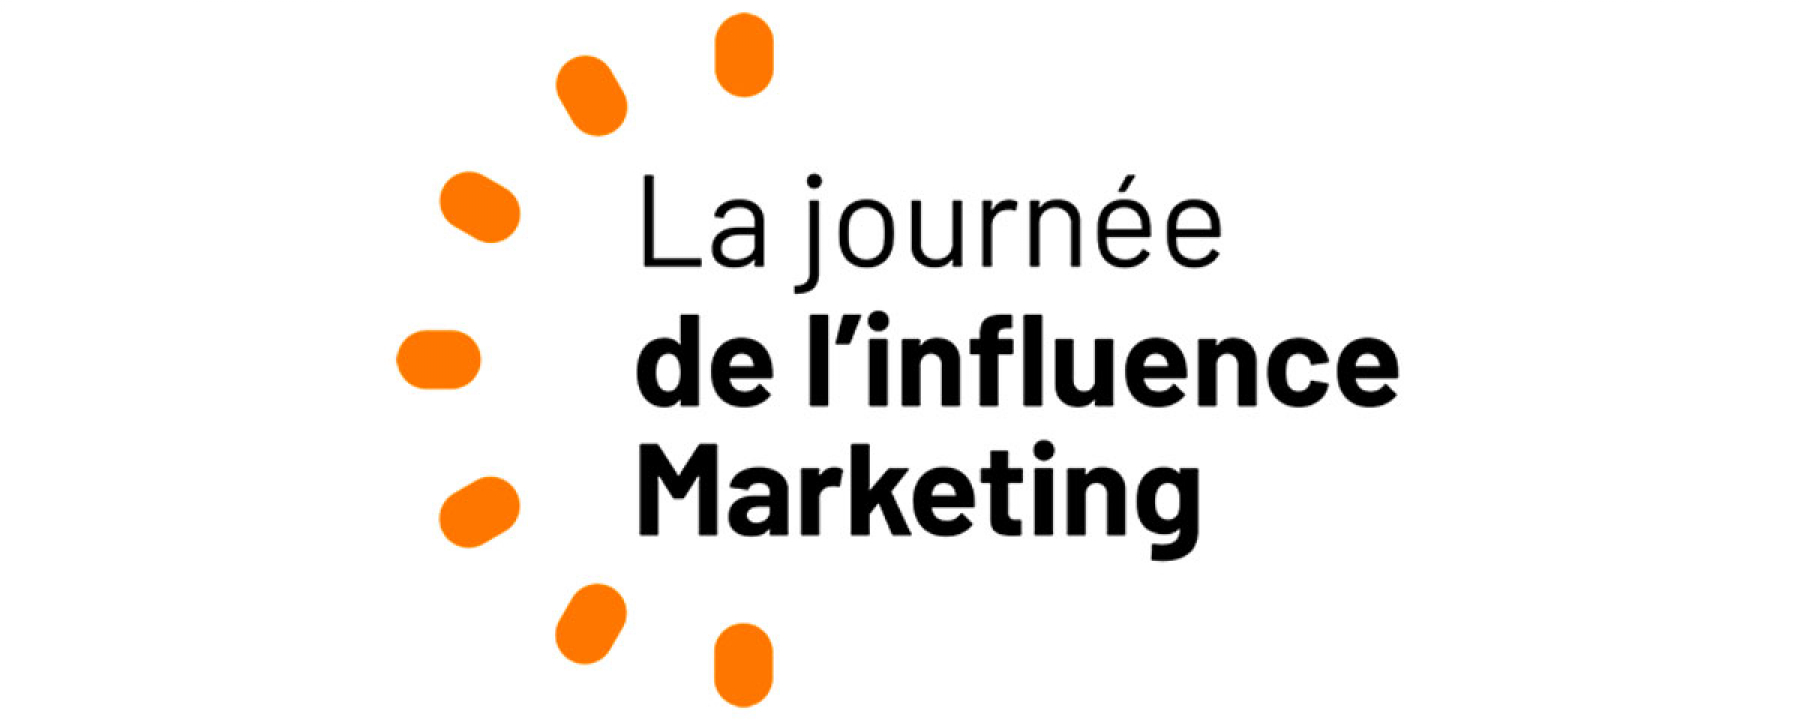 La journée de l'influence marketing par Netmedia group